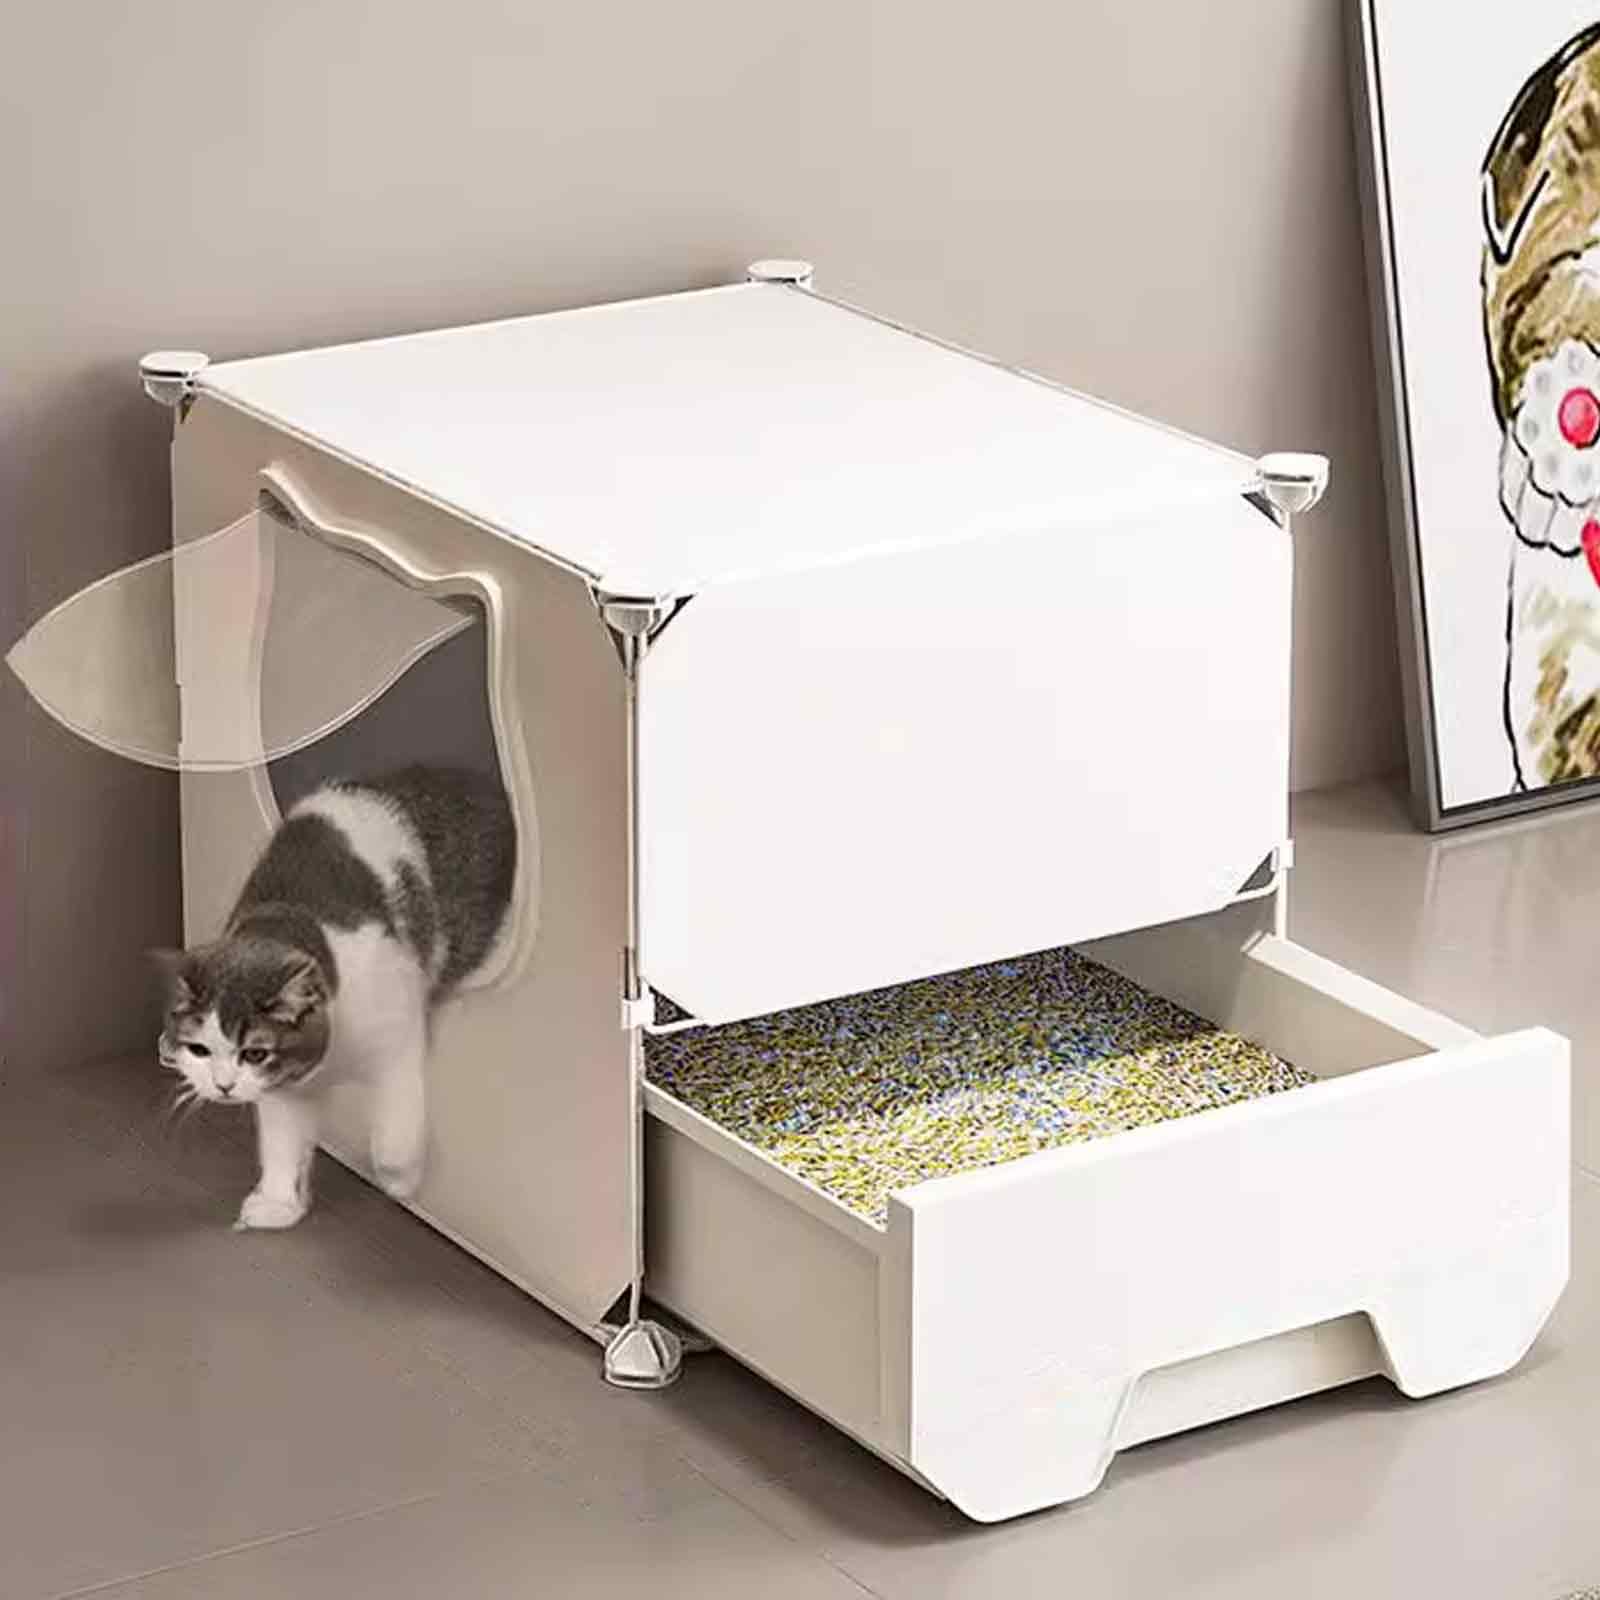 Katzenkäfig mit Katzentoilette, Katzenspielgehege für den Innenbereich, Katzenstreugehege, Metall und ABS-Kunststoff, geruchshemmend, leicht zu reinigen, einfach zu montieren